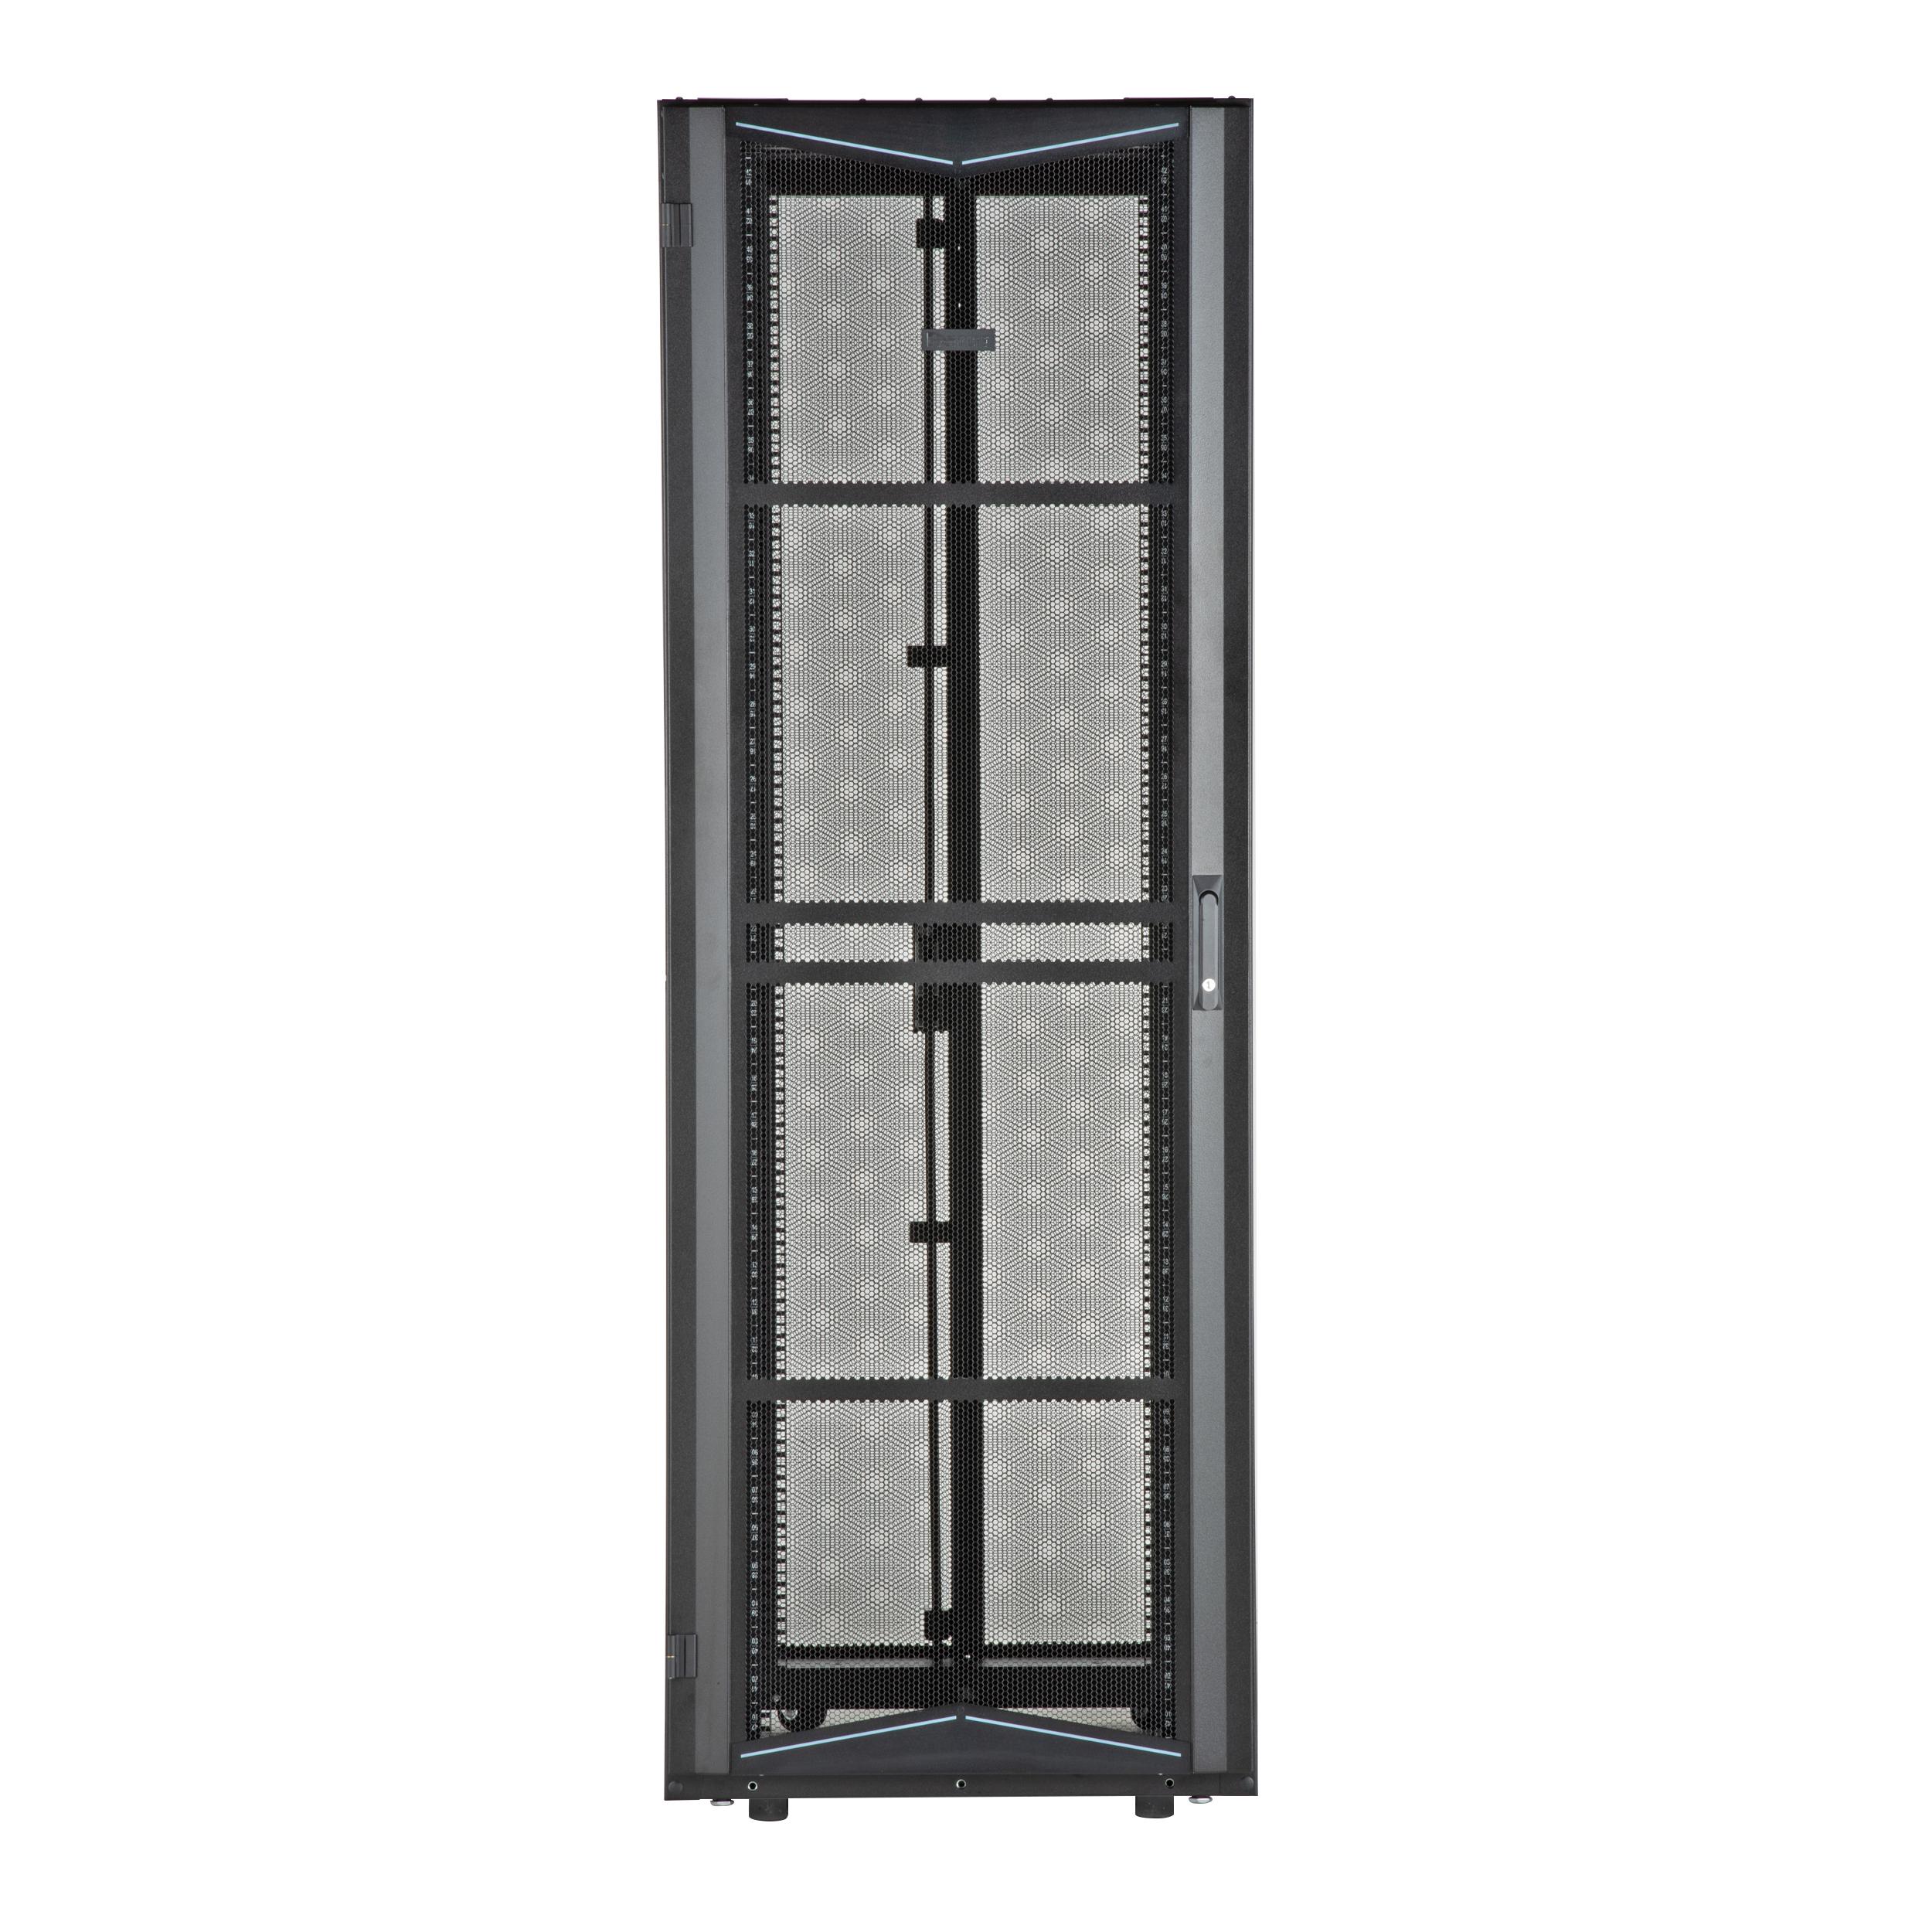 Panduit XG74522BS0001 FlexFusion Cabinet, 700mm x 45RU x 1200mm, Black